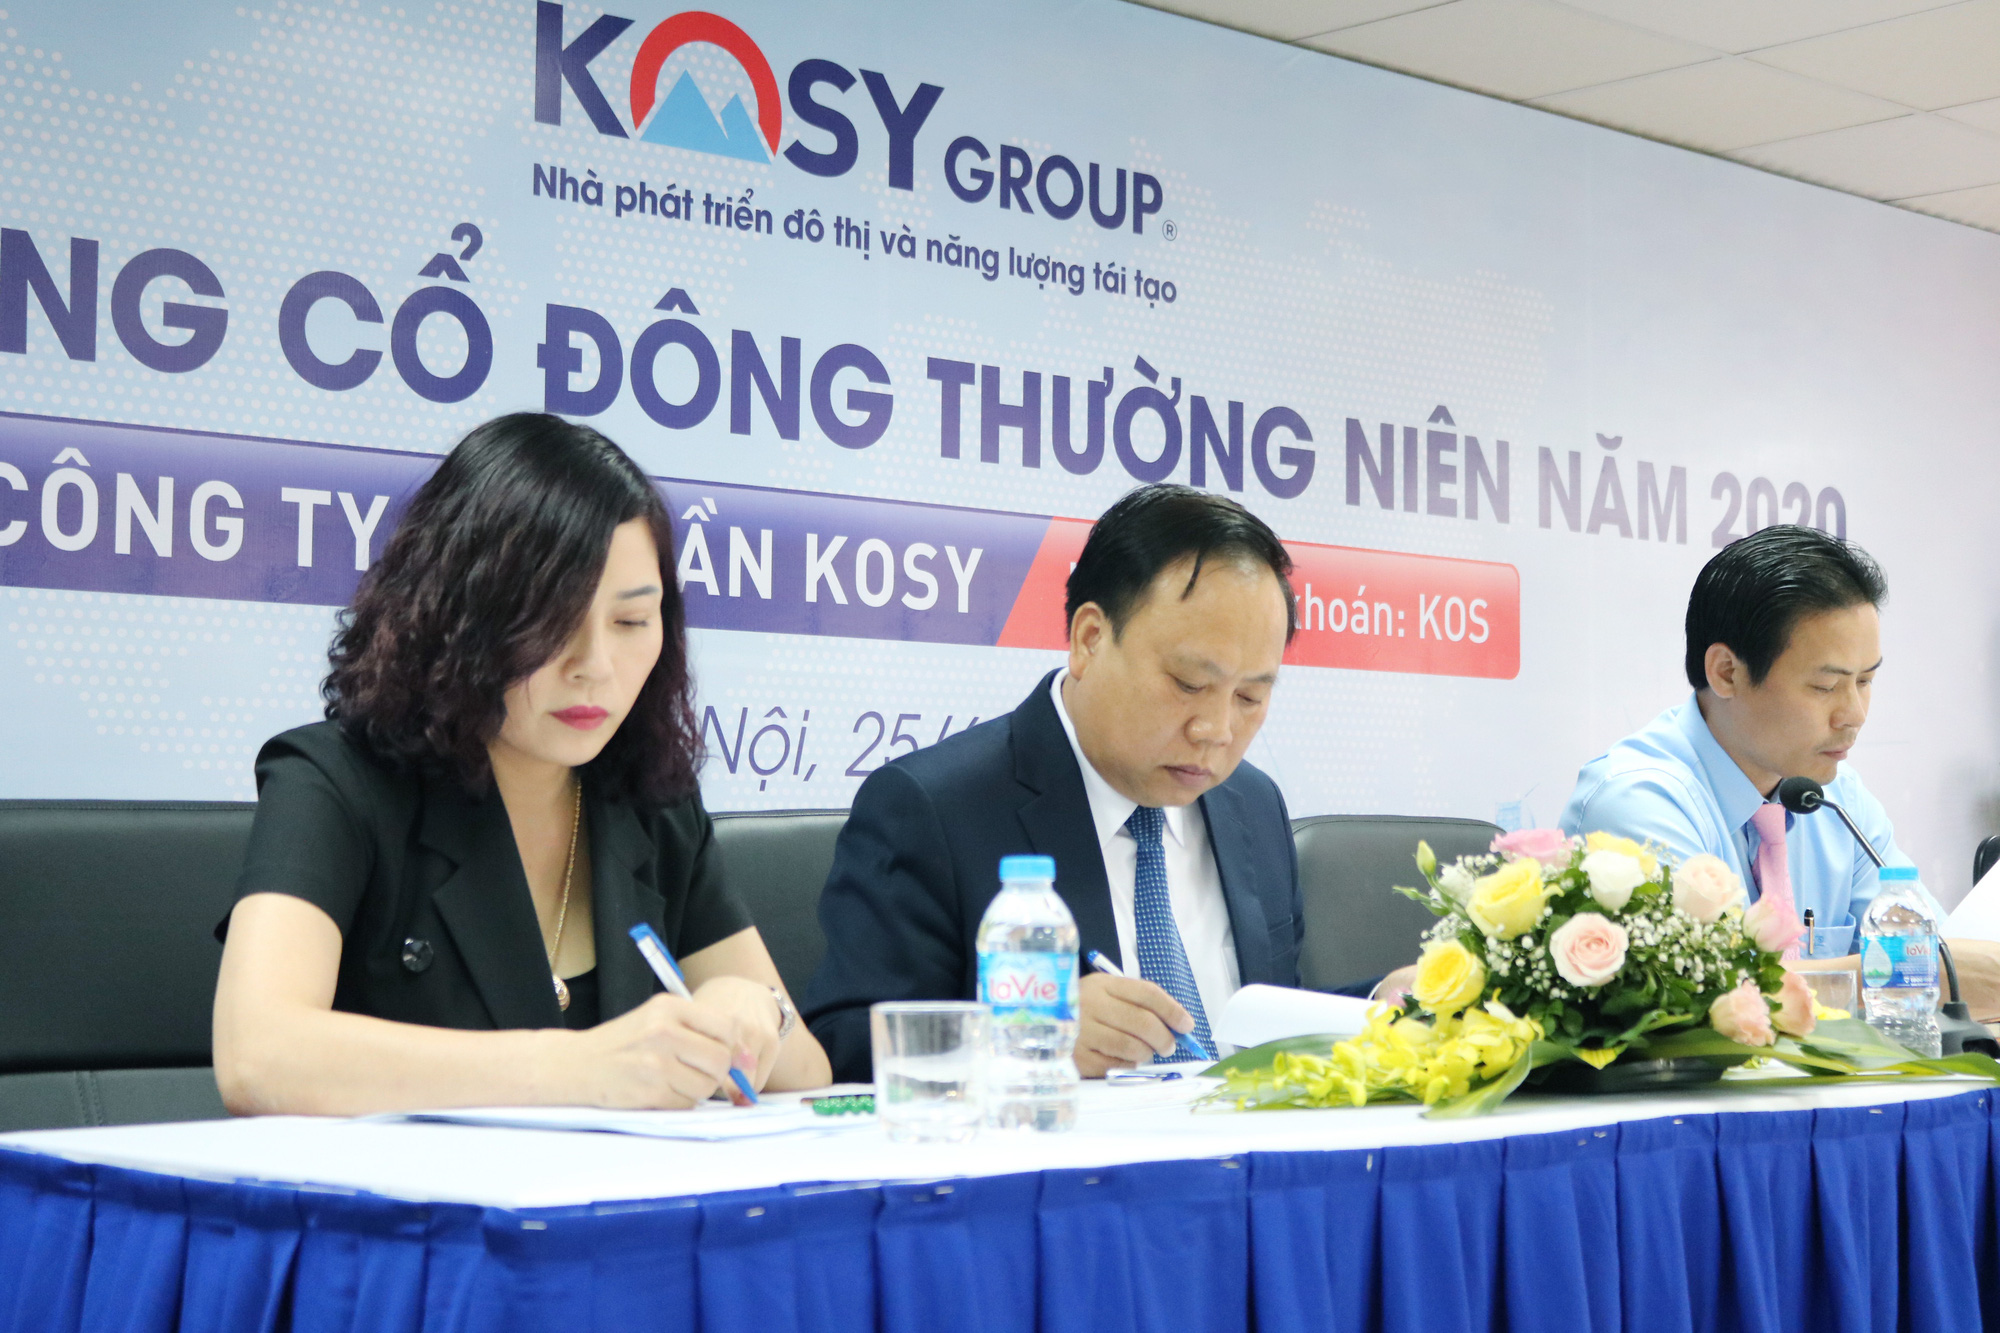 ĐHĐCĐ thường niên năm 2020 CTCP Kosy (KOS): Mục tiêu đạt 1.200 tỷ doanh thu - Ảnh 1.